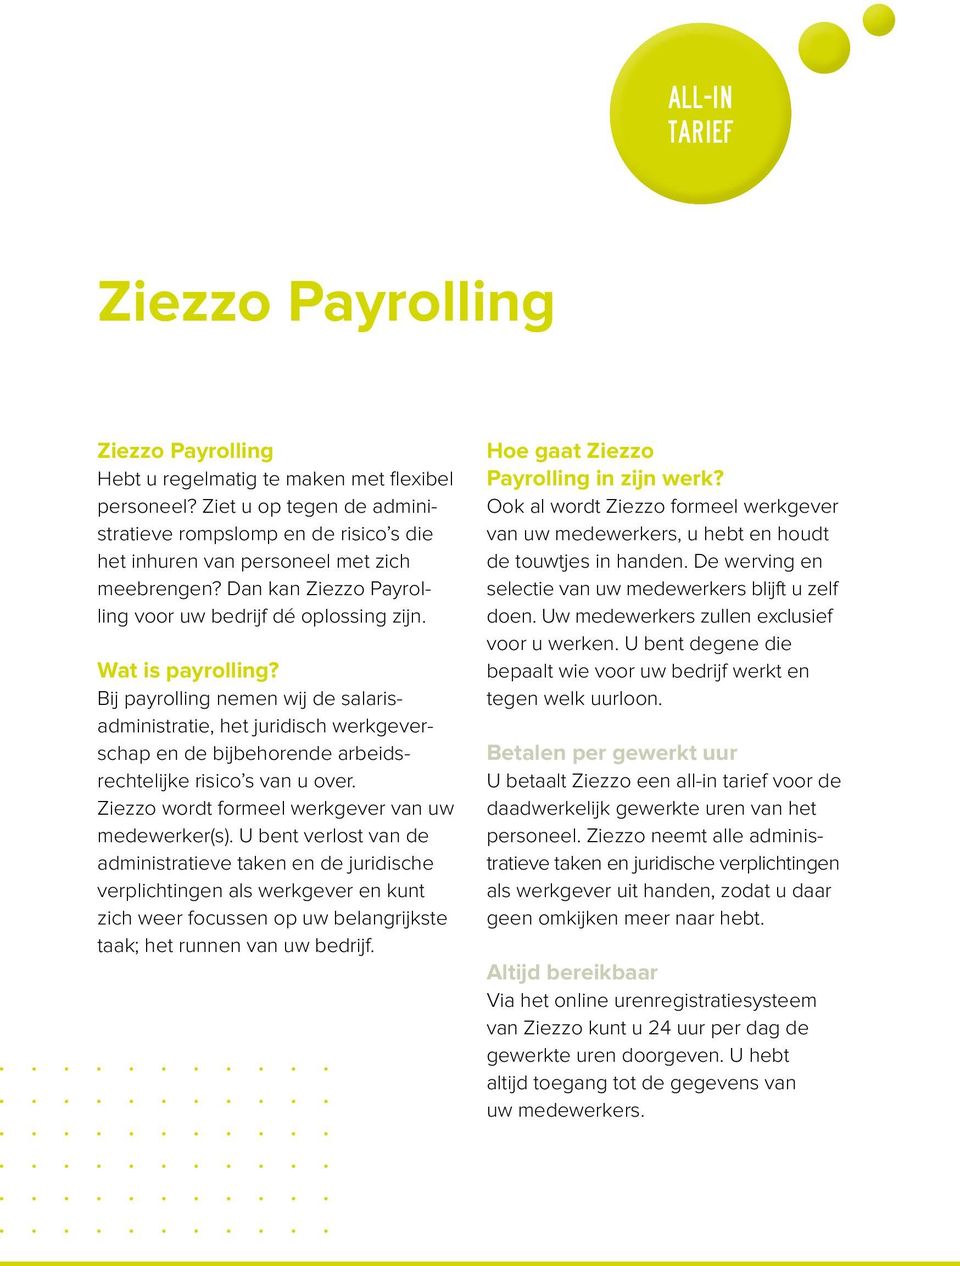 Bij payrolling nemen wij de salarisadministratie, het juridisch werkgeverschap en de bijbehorende arbeidsrechtelijke risico s van u over. Ziezzo wordt formeel werkgever van uw medewerker(s).